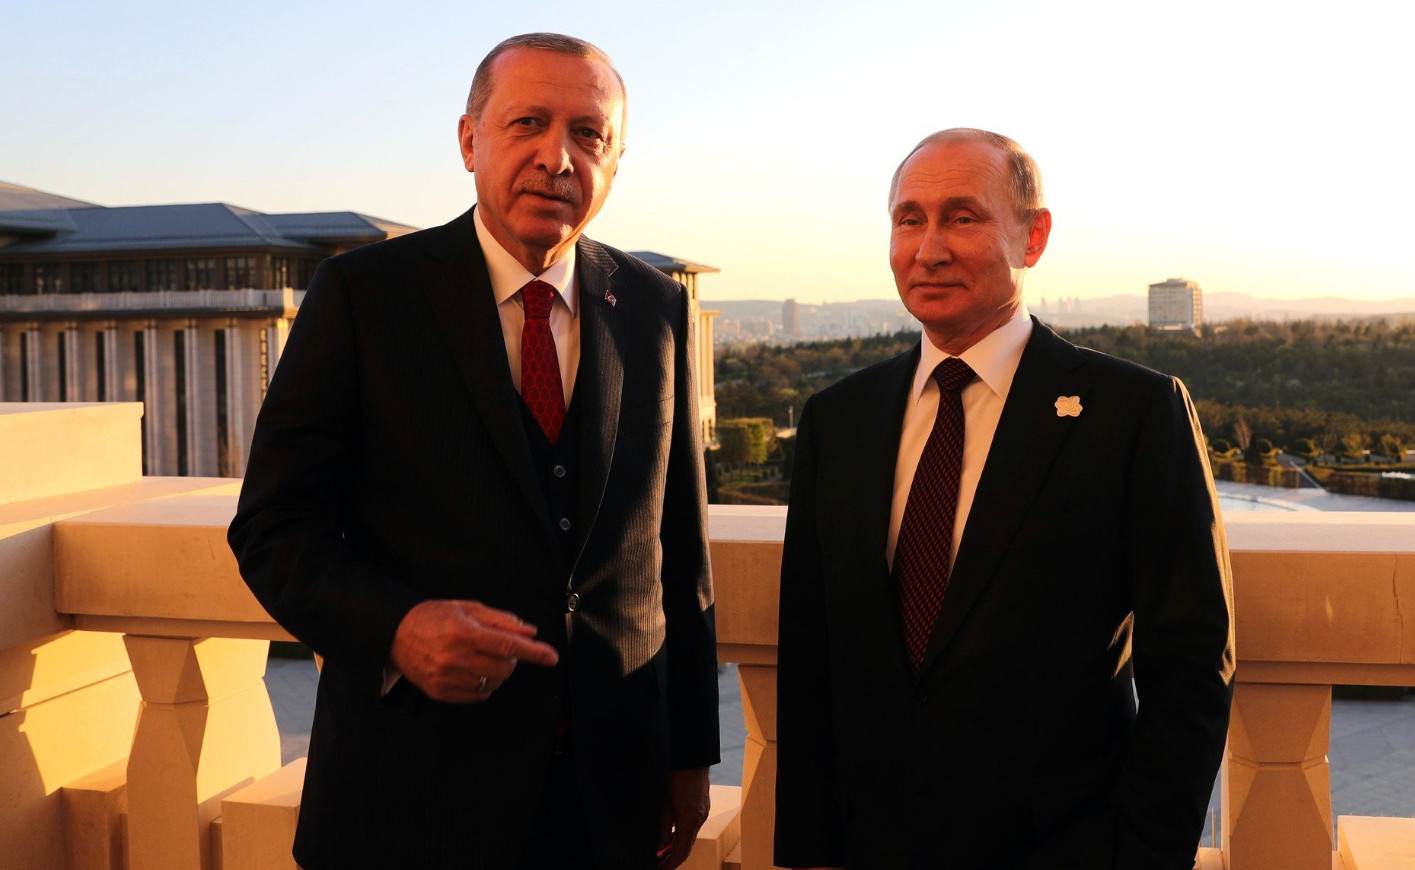 Κρεμλίνο: Οι πρόεδροι Πούτιν και Ερντογάν θα συναντηθούν σύντομα - Απουσία του Ρώσου προέδρου από την σύνοδο της G20